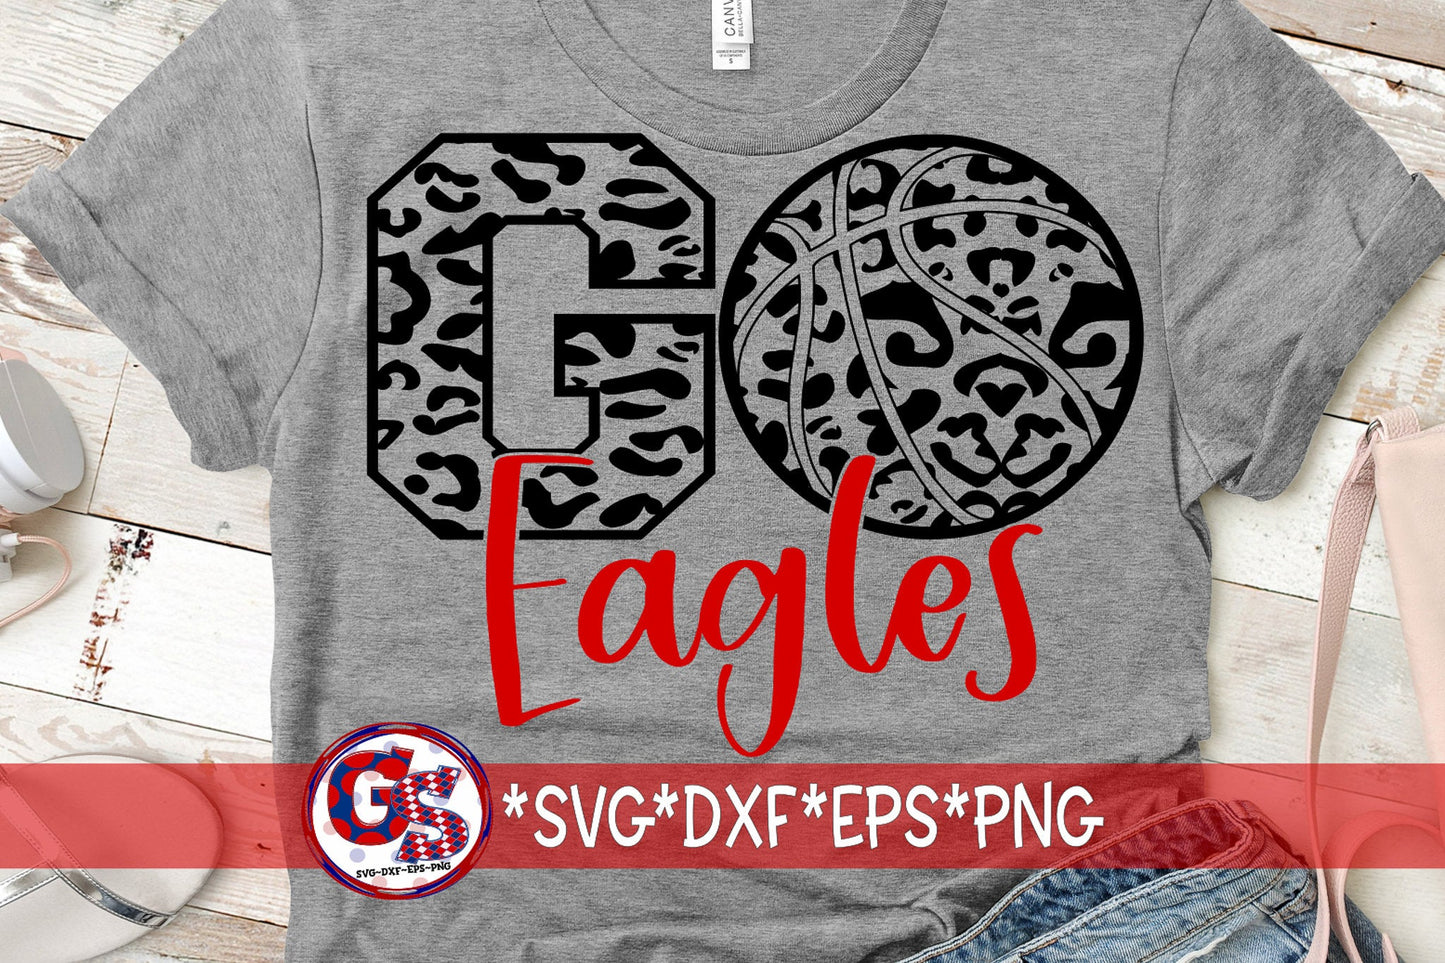 Eagles SvG | Go Eagles Basketball svg dxf eps png. Go Eagles Basketball Leopard SvG | Eagles DxF | Eagles SvG | Instant Download Cut File